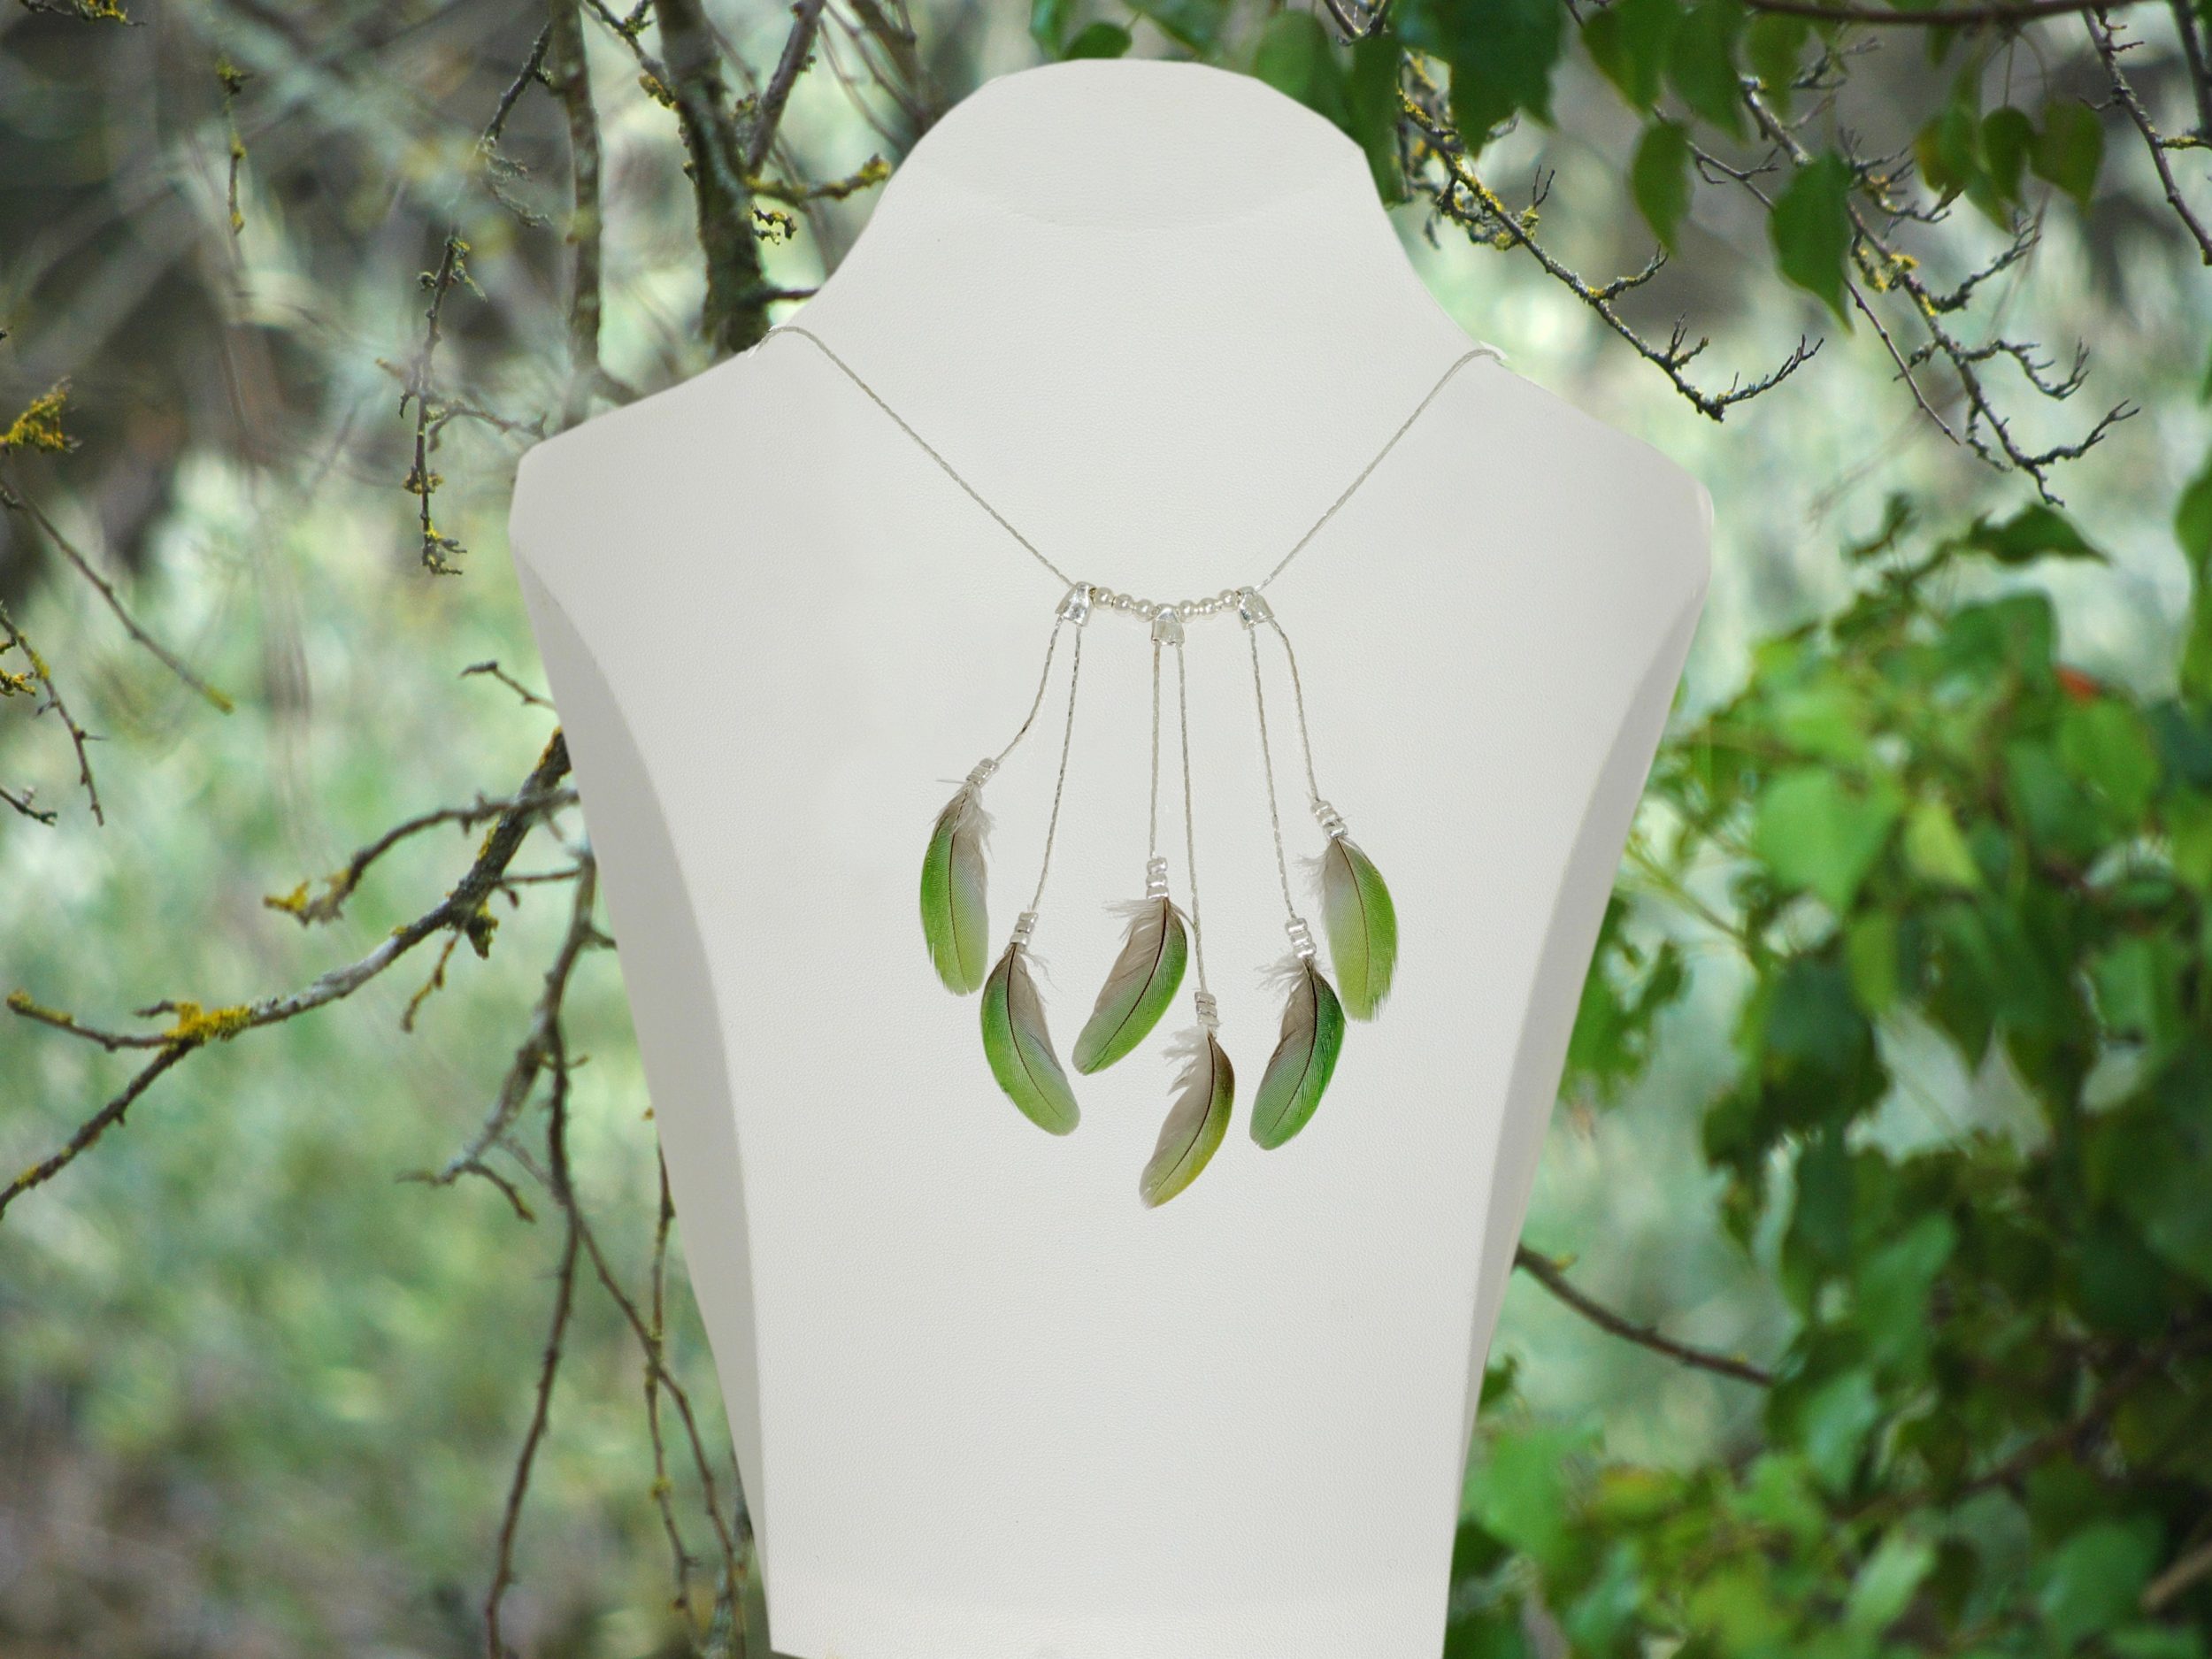 Un collier fait de chaînes argentées et de plumes vertes, présenté dans un décor végétal.